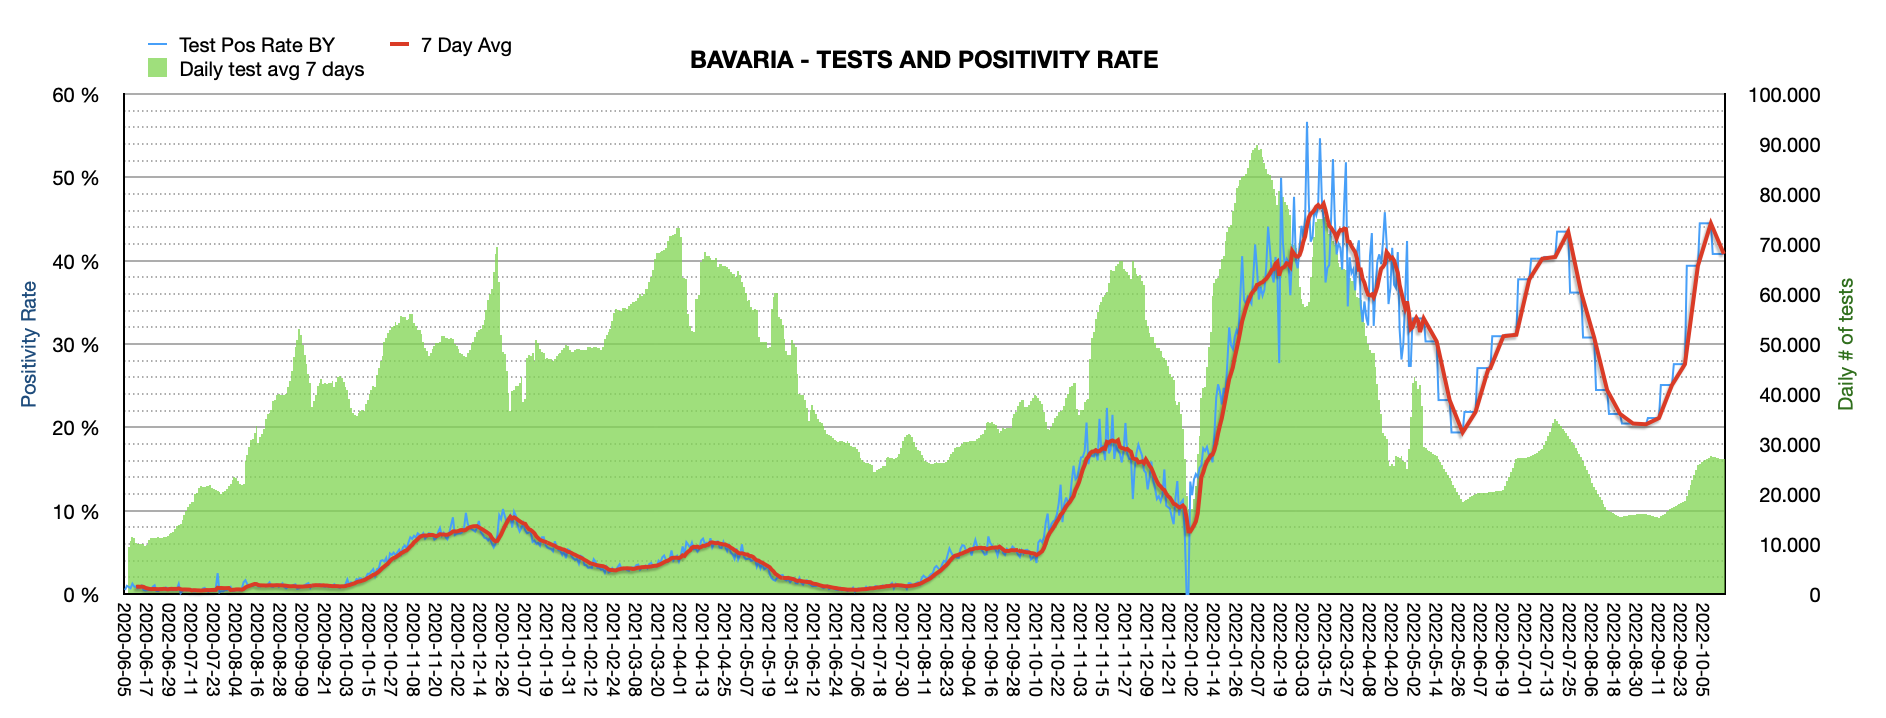 Grafik mit durchgeführten PCR Tests pro Tag in Bayern seit Juni 2020. Die Zahl der Tests pro Tag ist mit ca. 26.923 weiterhin niedrig und weit vom Maximum von ca. 100.000 Tests/Tag entfernt. Die Positivrate sinkt auf jetzt 40,82%.